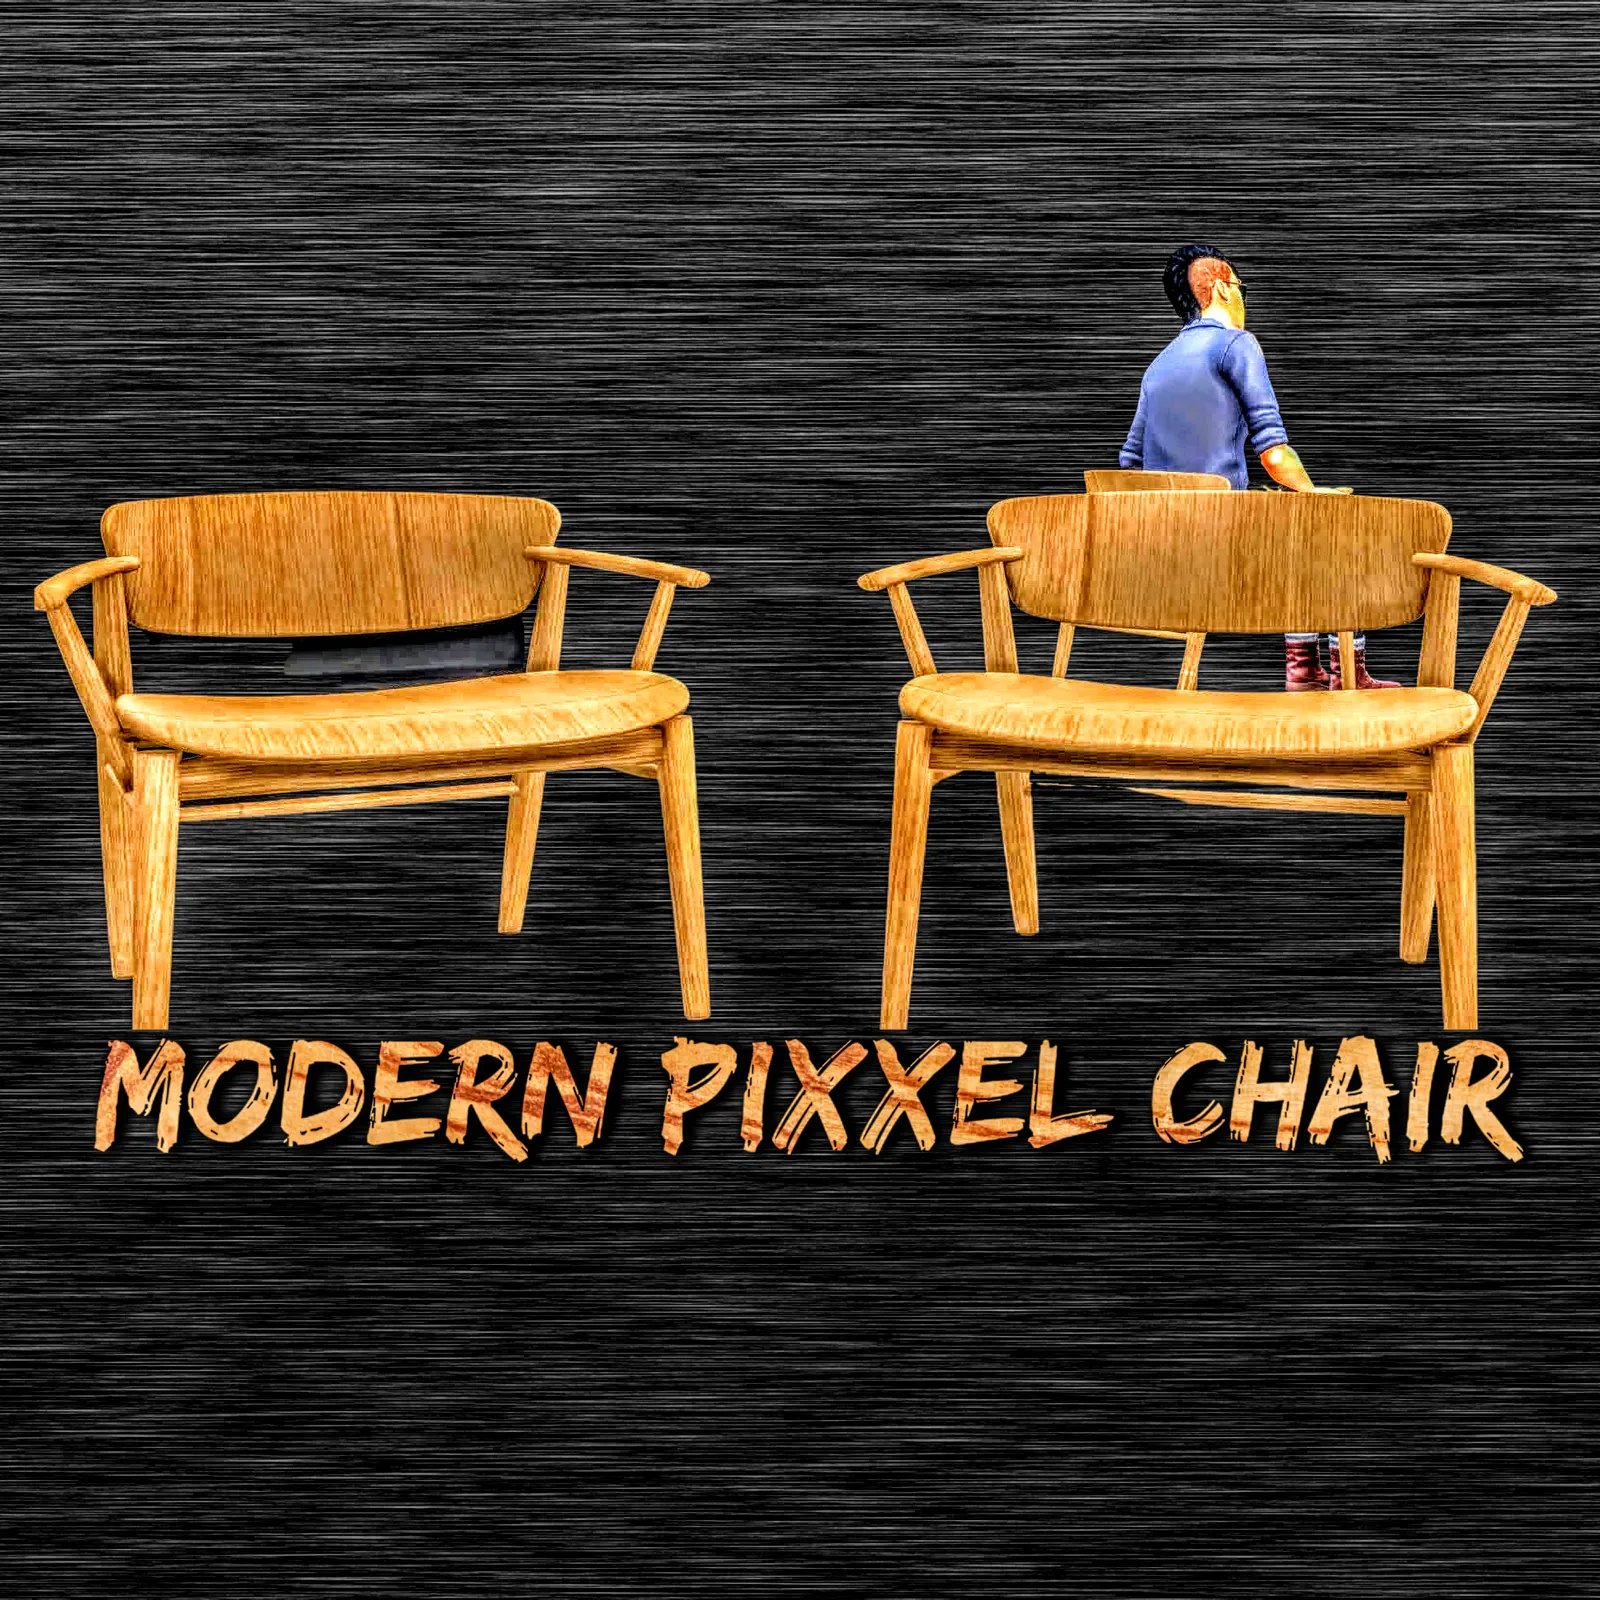 Modern Pixxel Wooden Chair